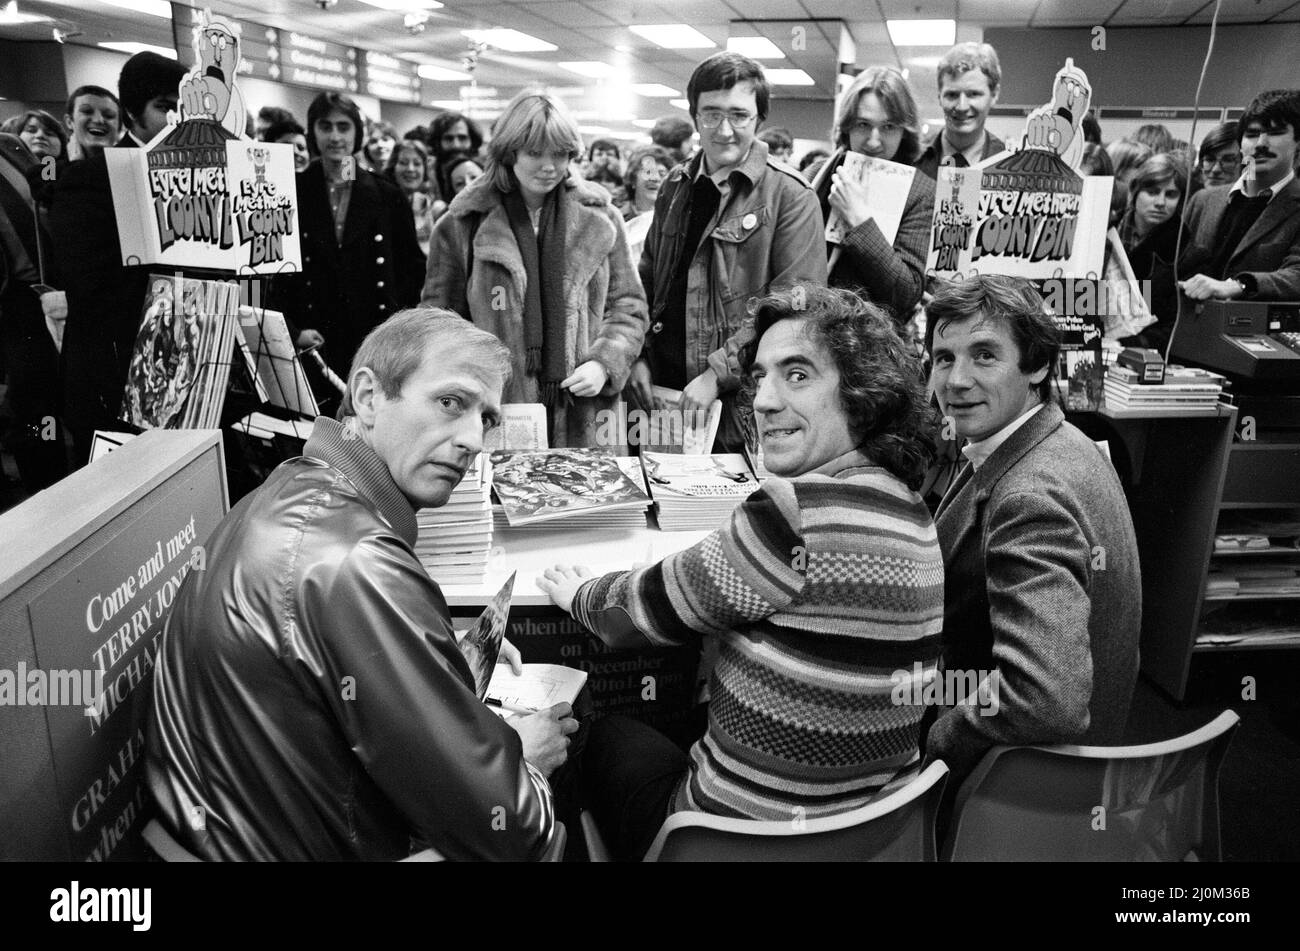 Tre dei team di commedia Monty Python, Graham Chapman, Terry Jones e Michael Palin, si trovavano a WHSmith presso l'Holborn Circus, firmando copie di alcuni dei loro libri. 8th dicembre 1980. Foto Stock